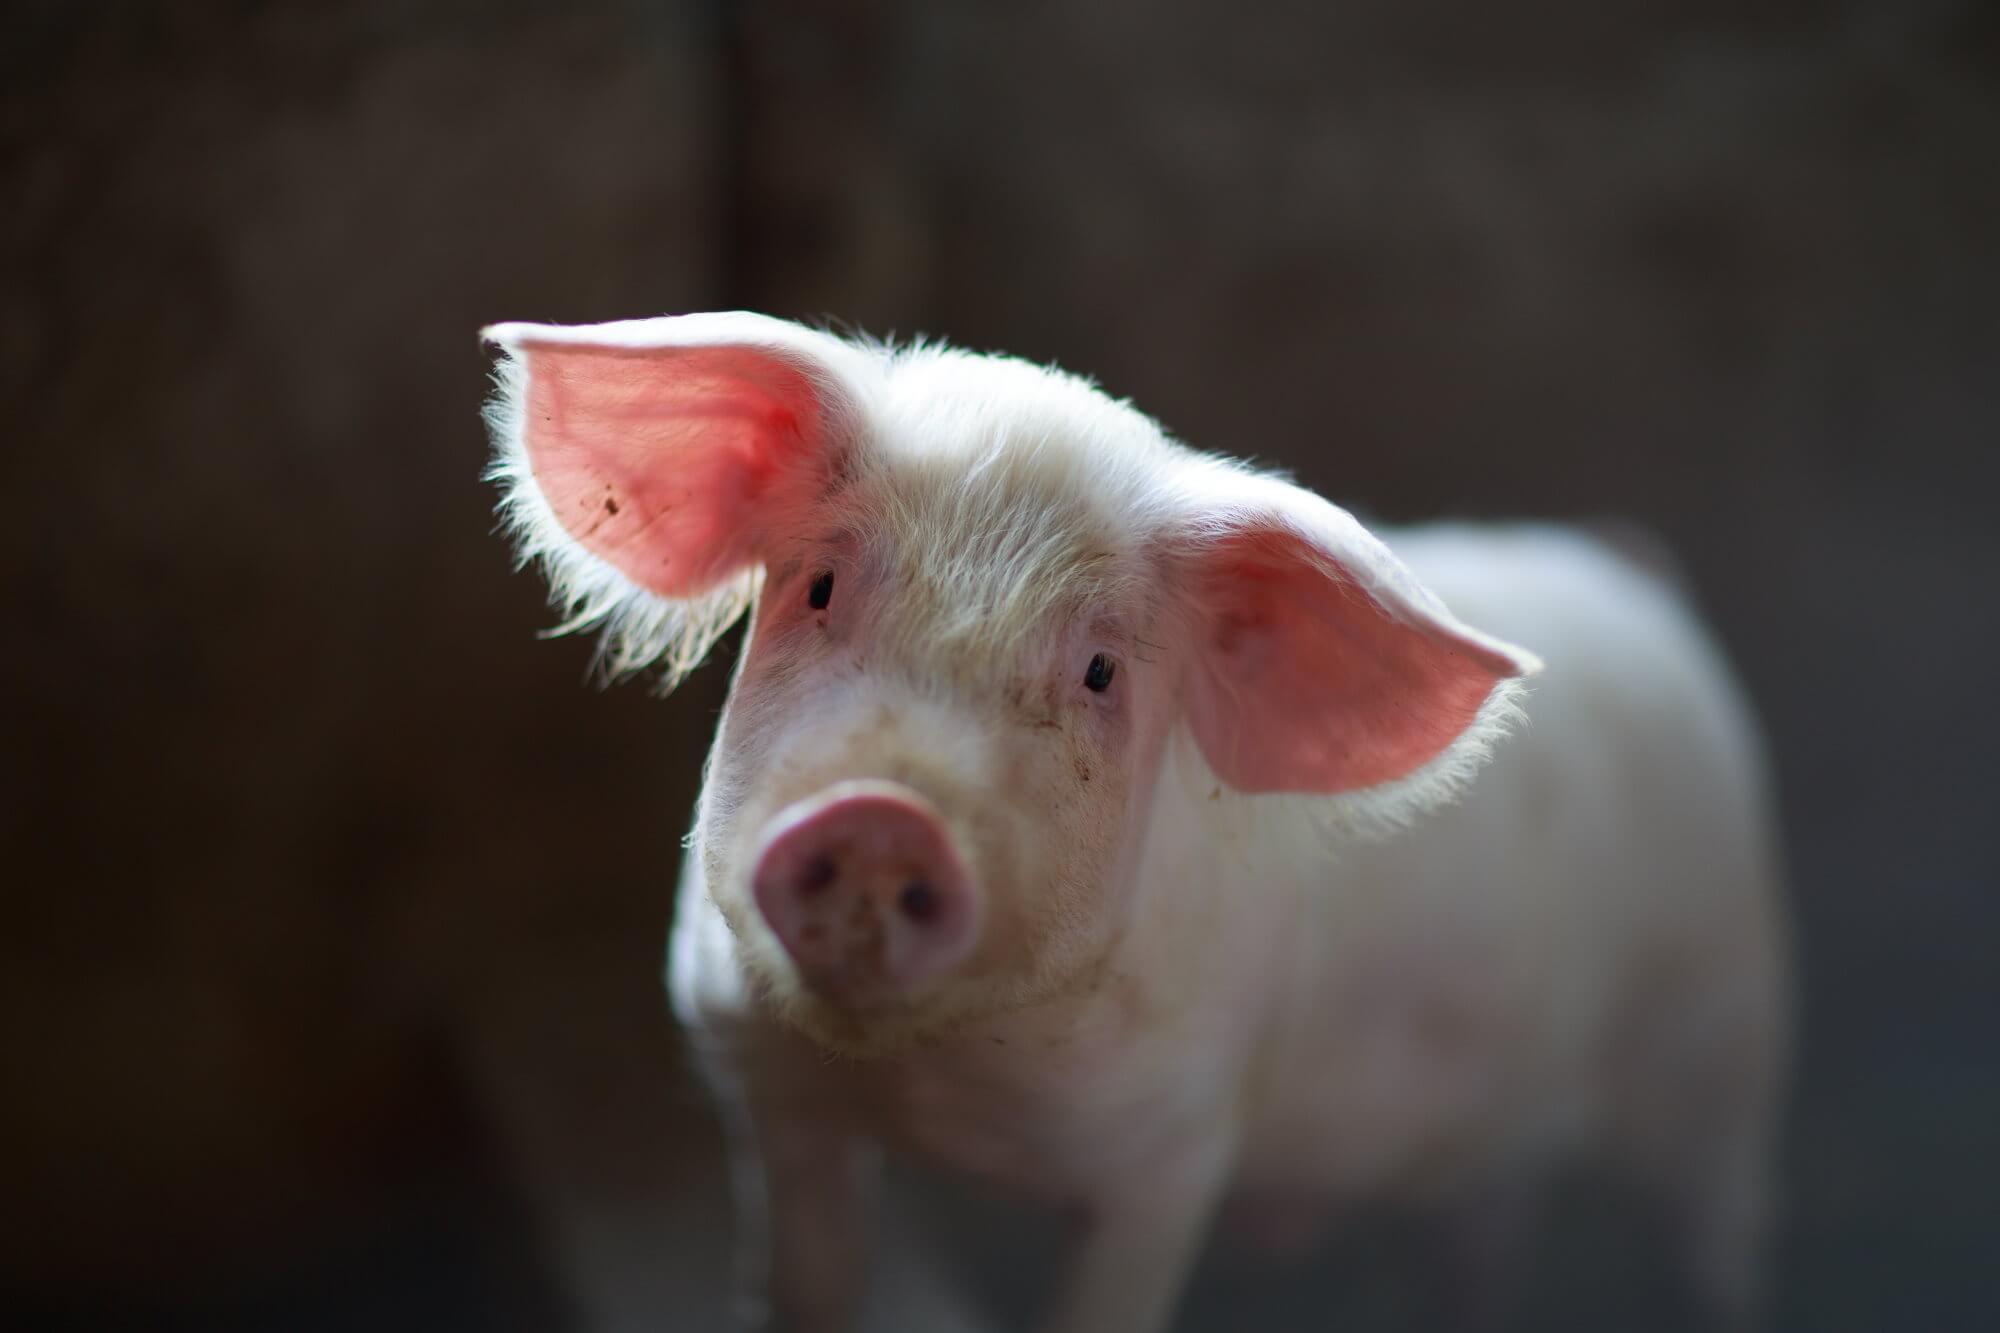 Schweinsleder zum ersten mal geholfen hat schwere Verbrennungen zu heilen Person